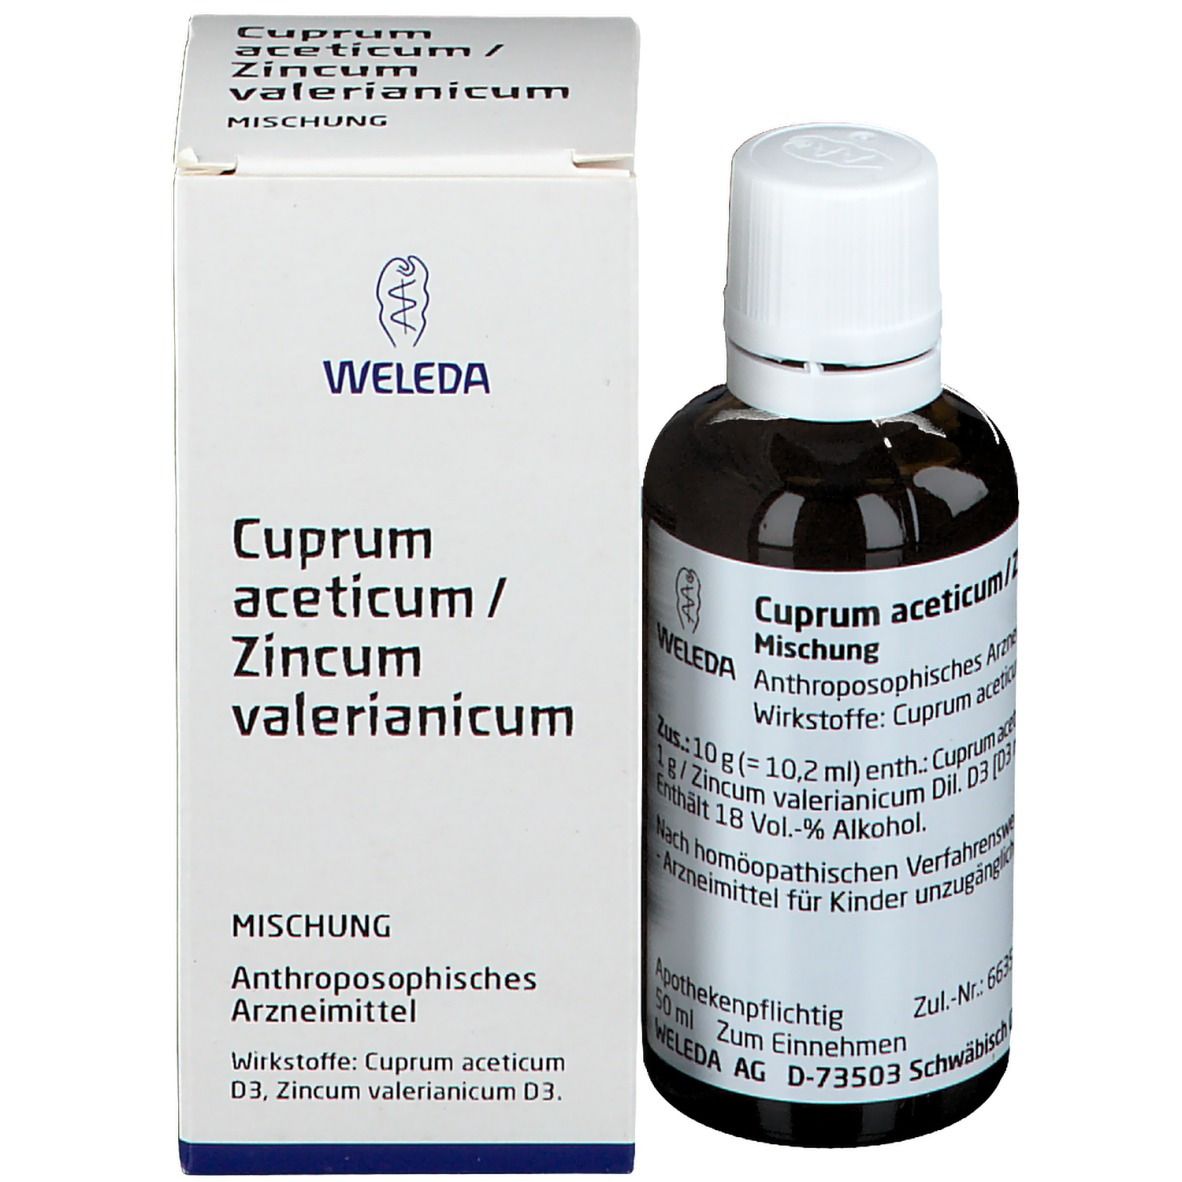 Cuprum Aceticum / Zincum valerianicum